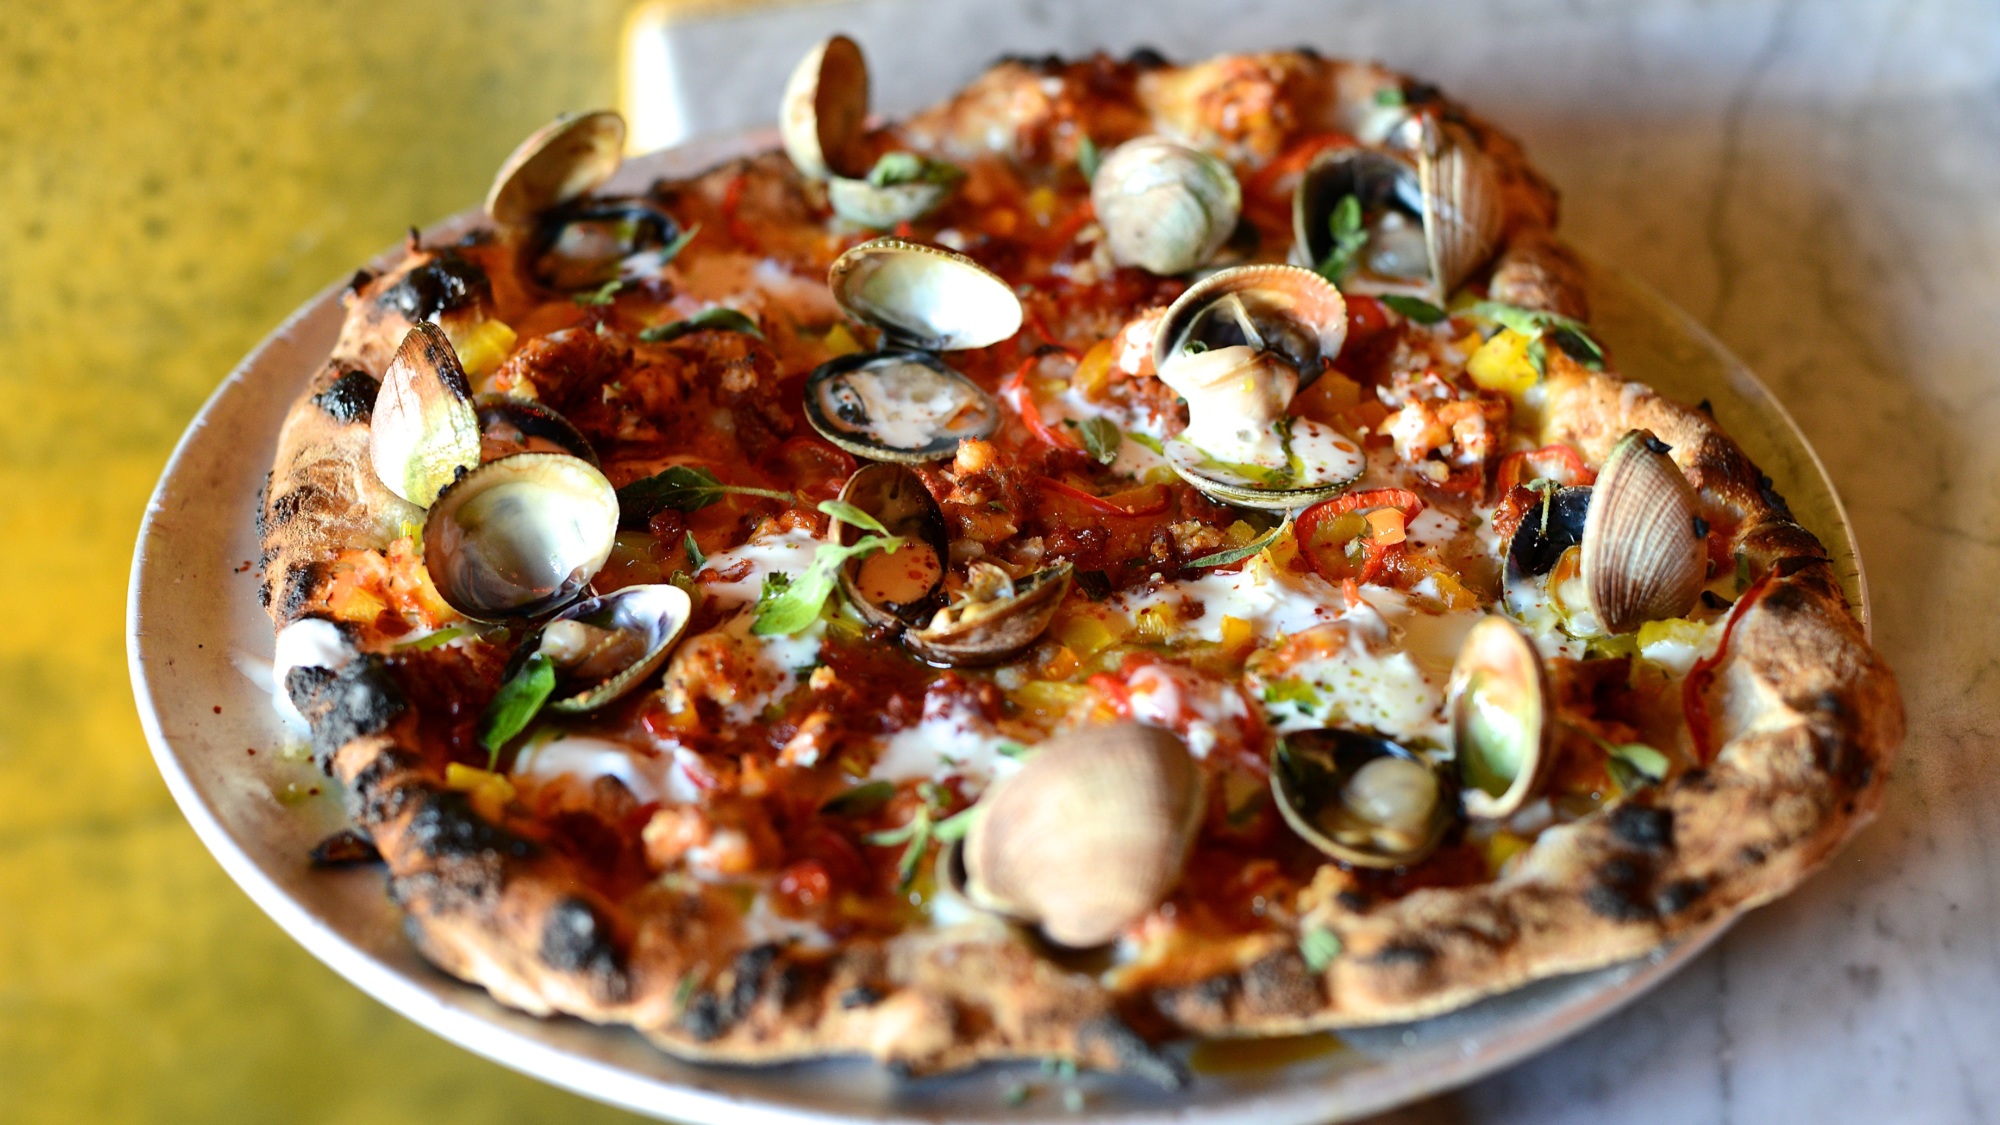 A clam pizza from Ogliastro Pizza Bar